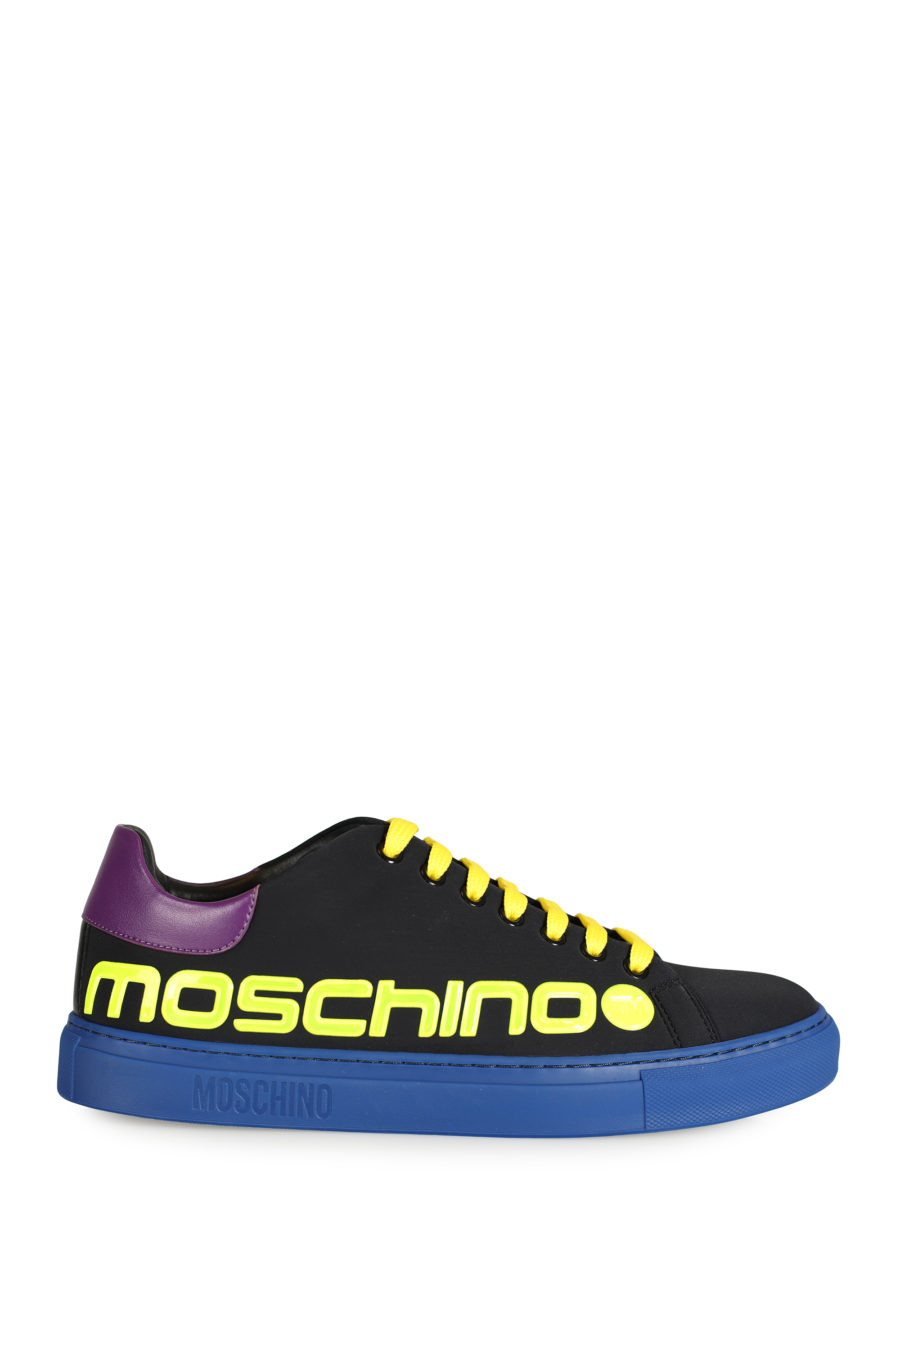 Zapatillas negras con detalles de colores - IMG 3317